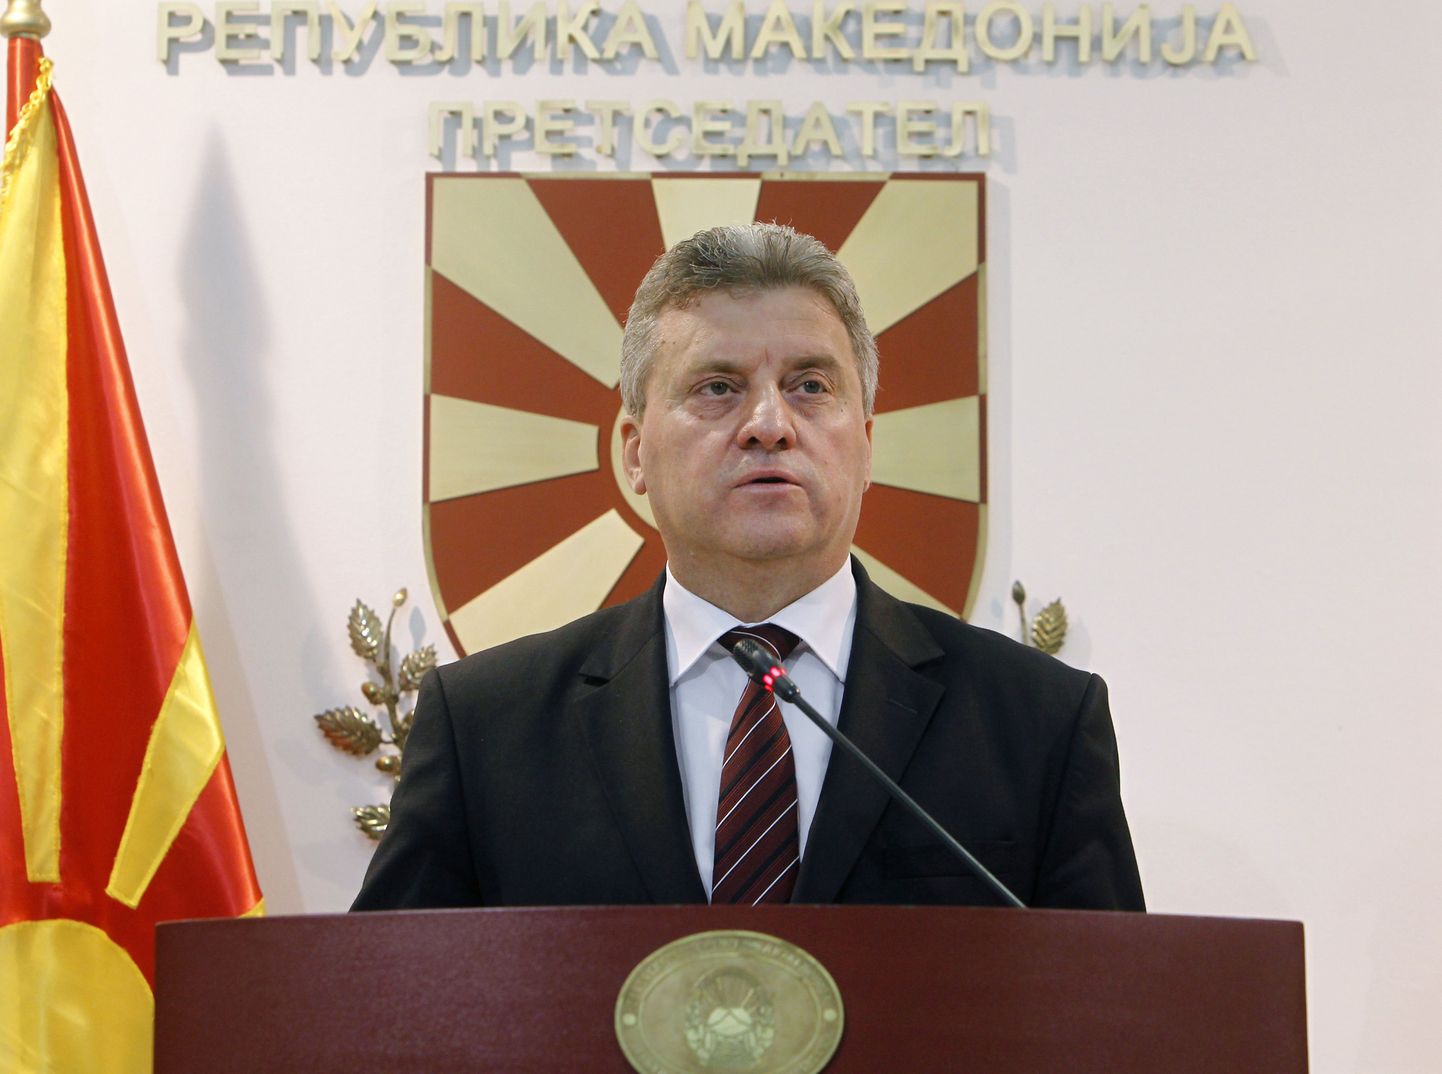 Makedoonia president Gjorge Ivanov